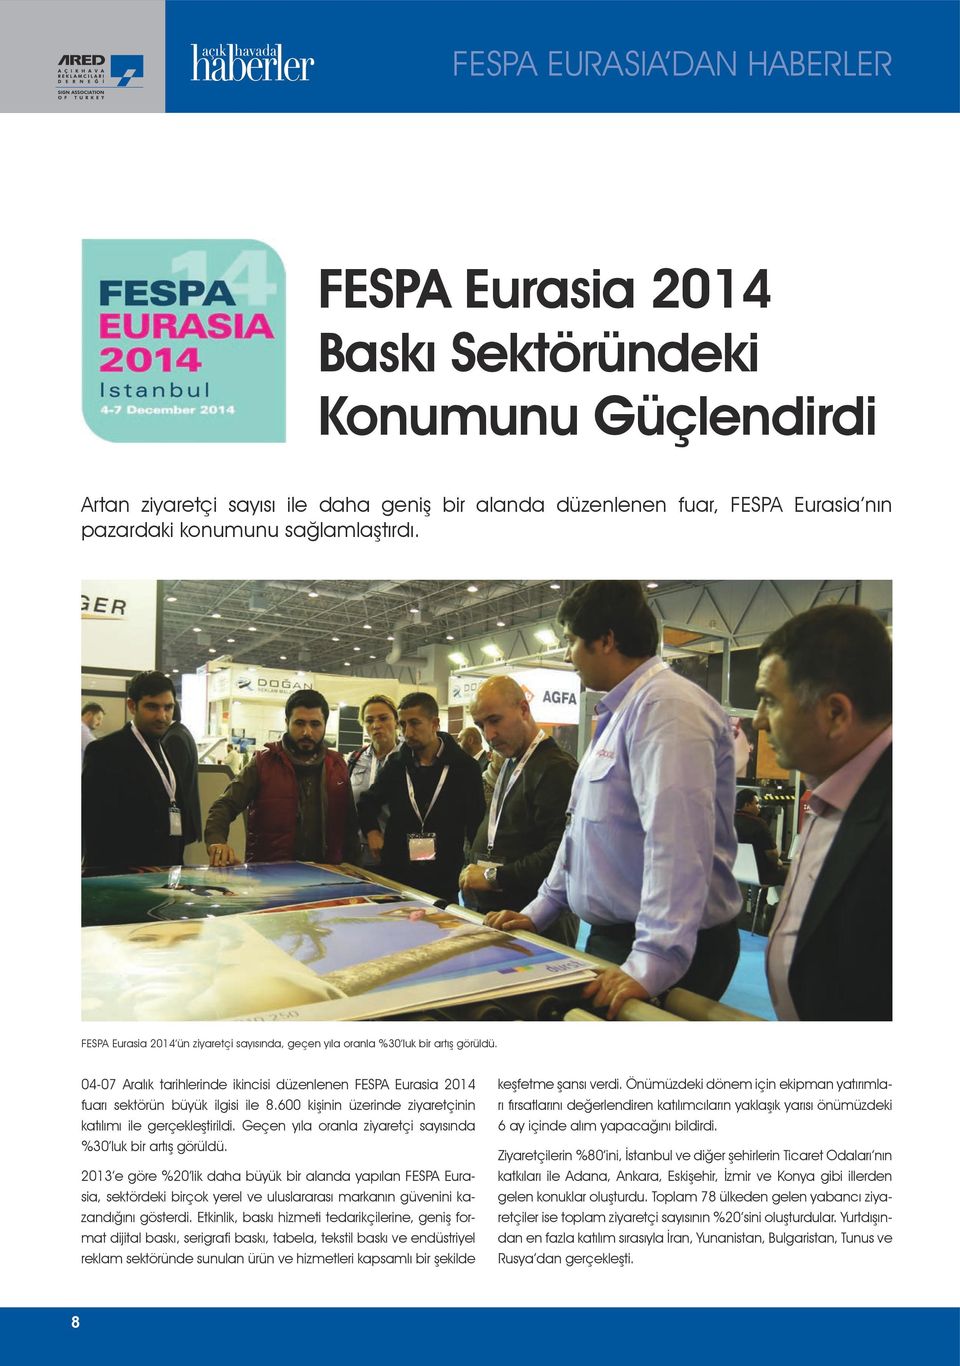 04-07 Aralık tarihlerinde ikincisi düzenlenen FESPA Eurasia 2014 fuarı sektörün büyük ilgisi ile 8.600 kişinin üzerinde ziyaretçinin katılımı ile gerçekleştirildi.